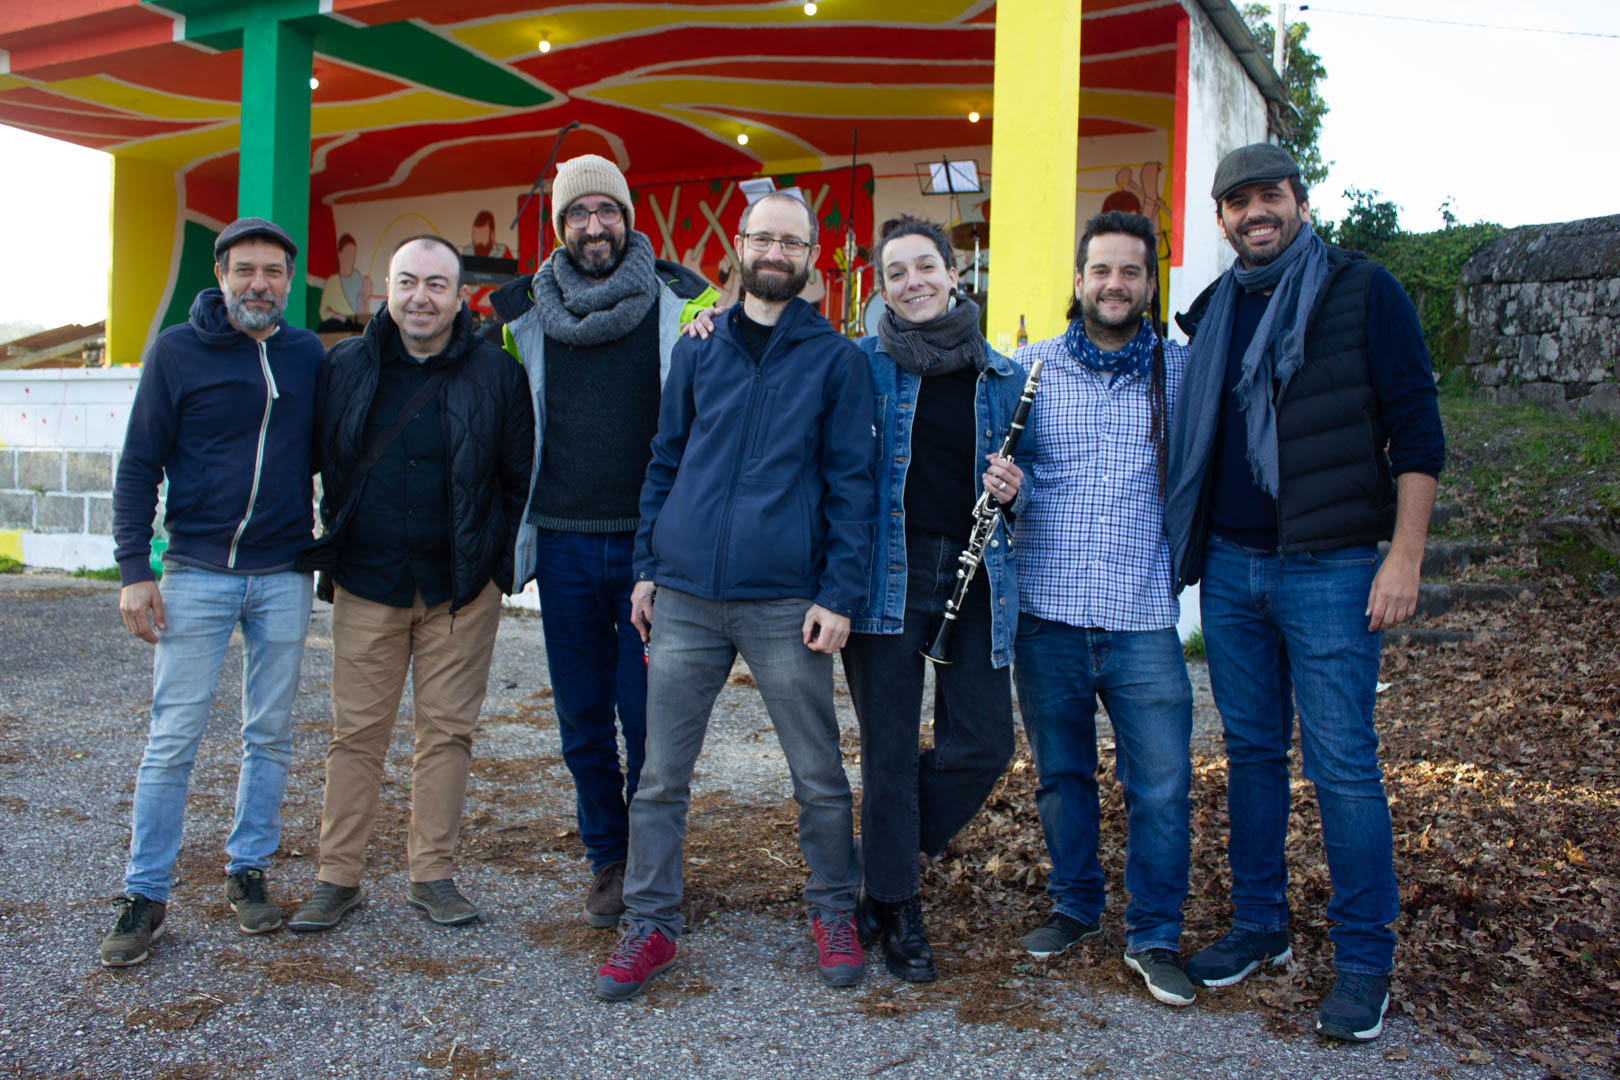 The Combo de Cuñas jazz band at Casa do Pobo - 'Entre Culturas' Event